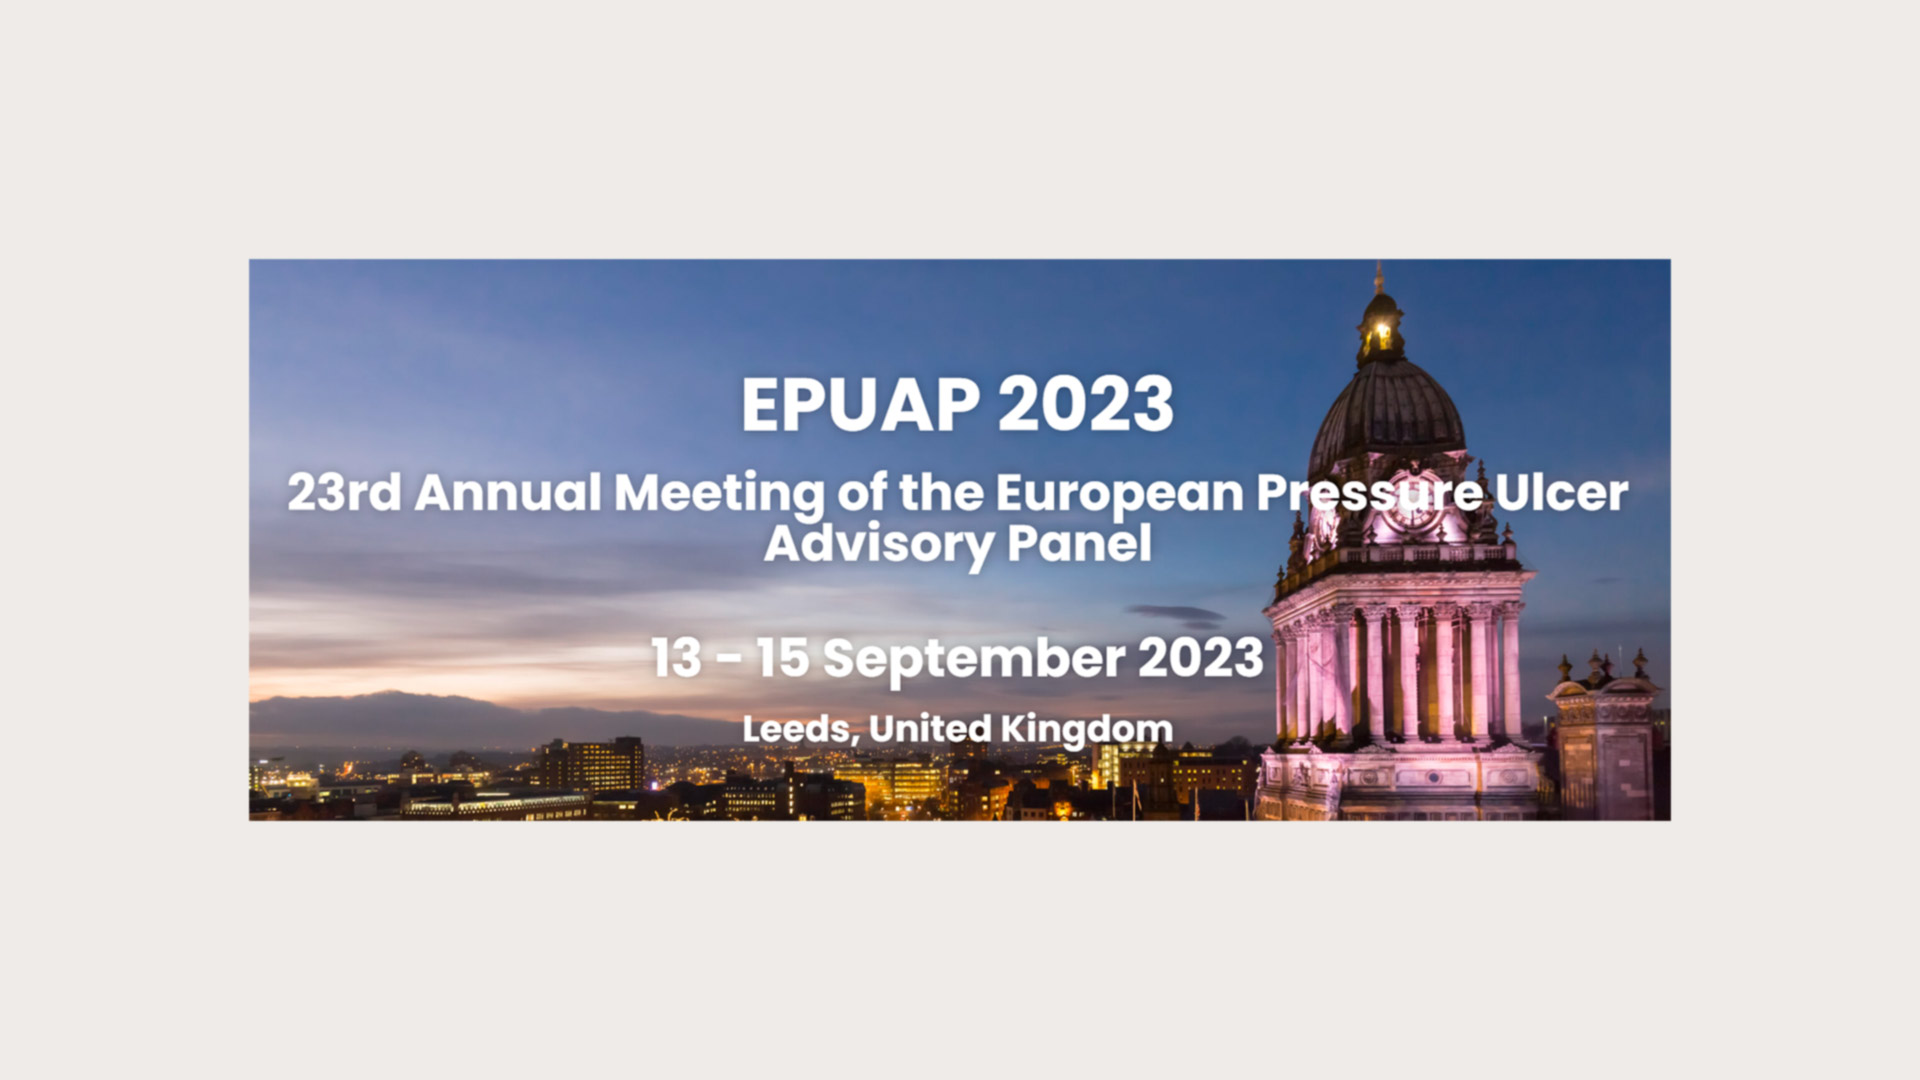 EPUAP 2023 visuel